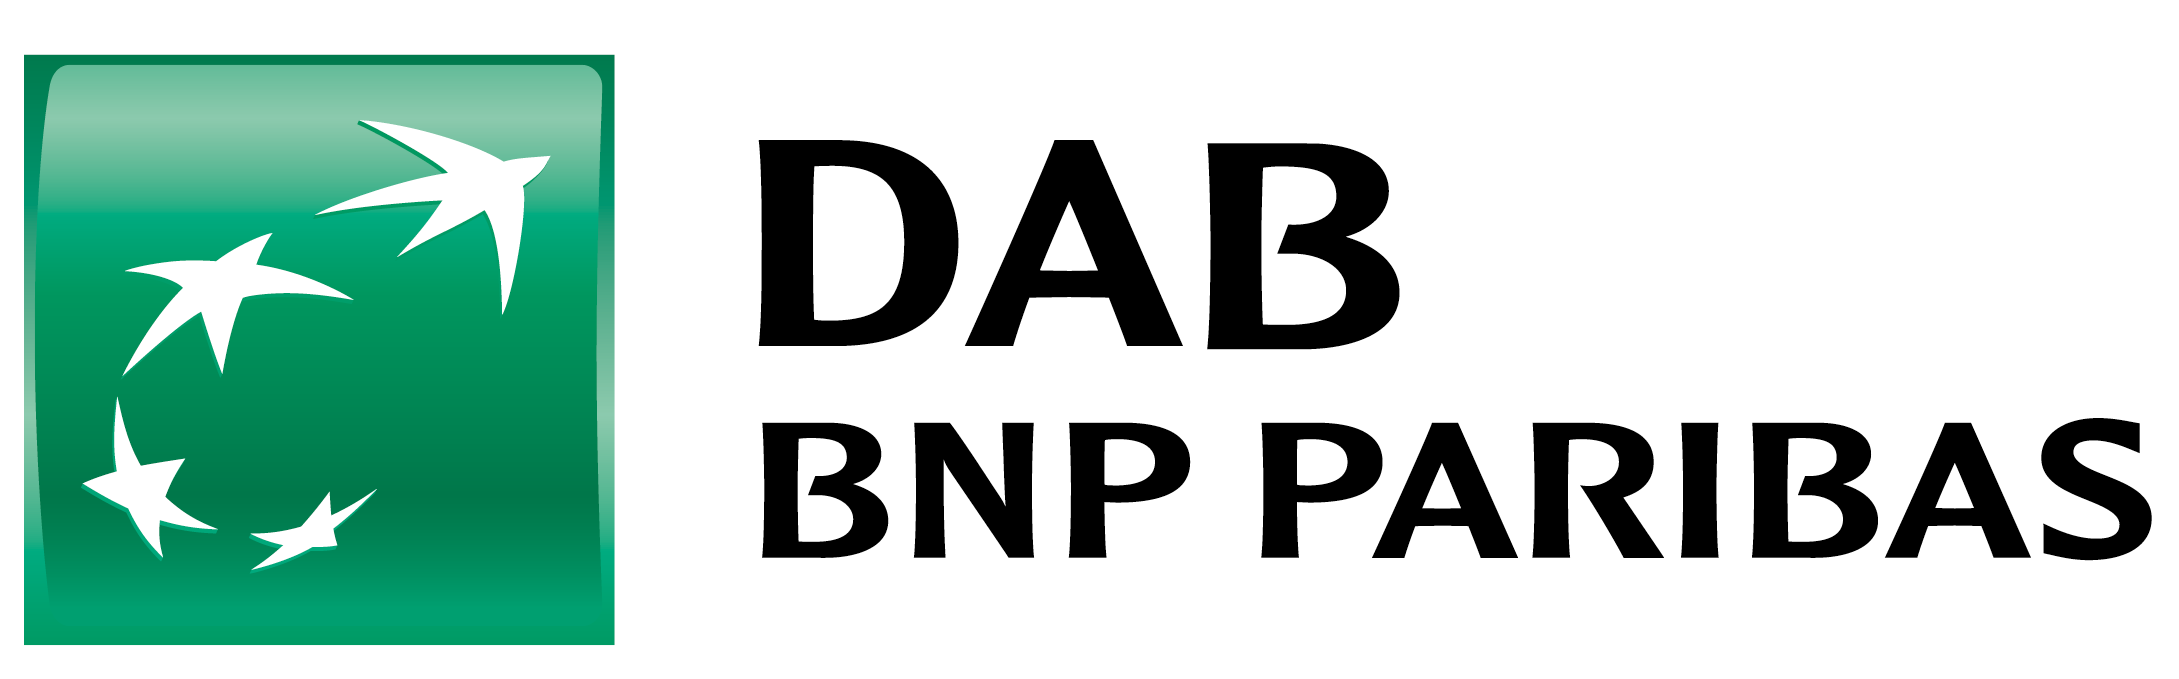 DAB Bank